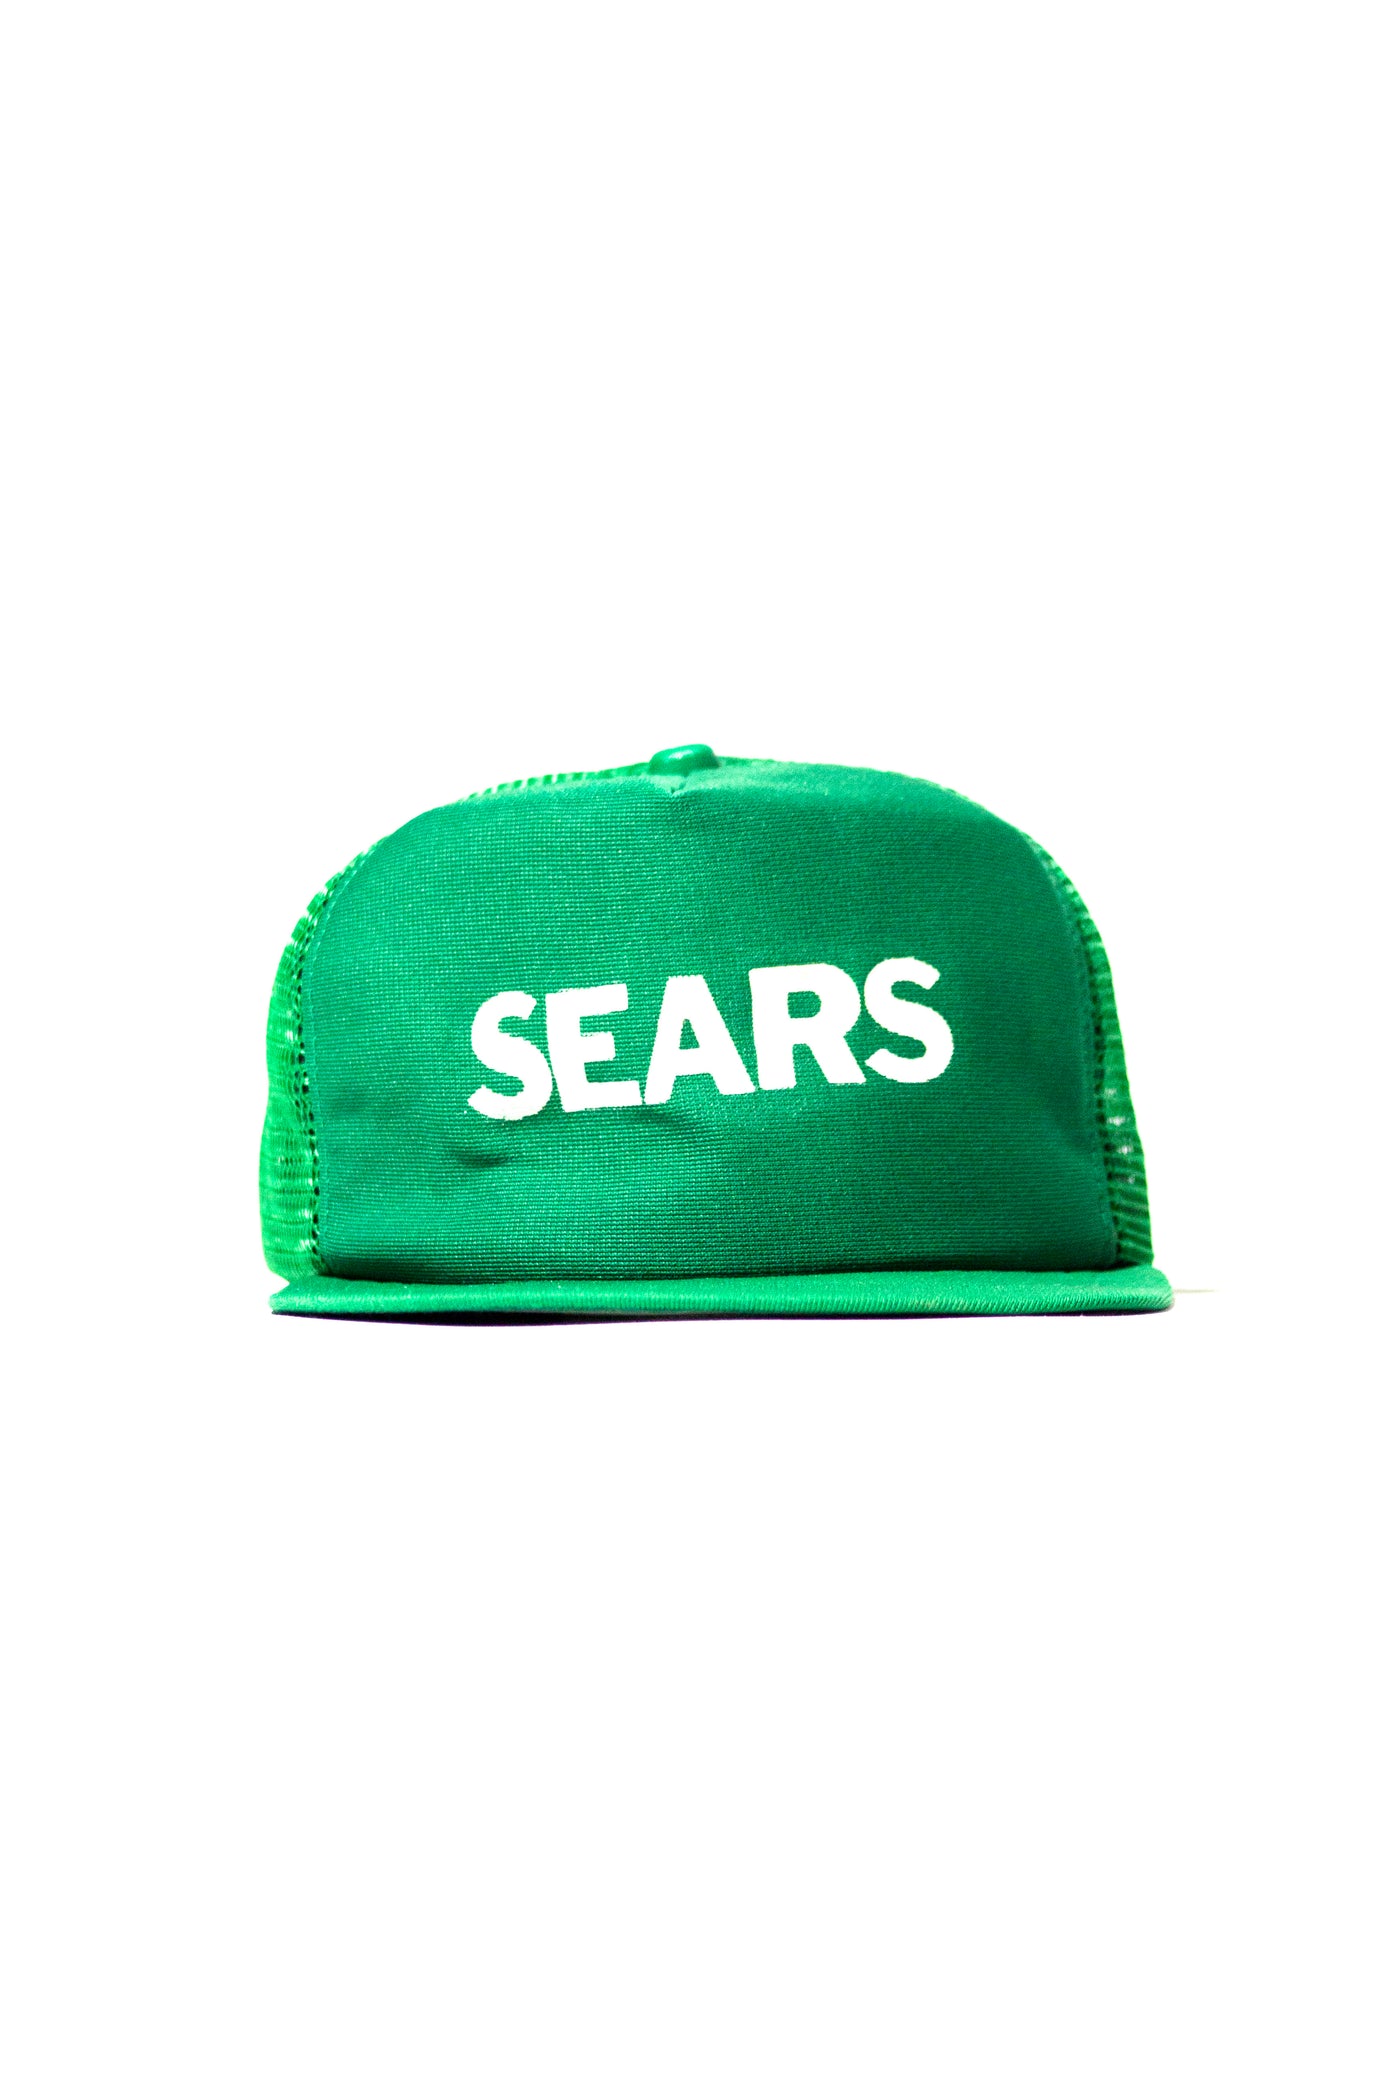 Vintage 80s Sears Trucker Hat